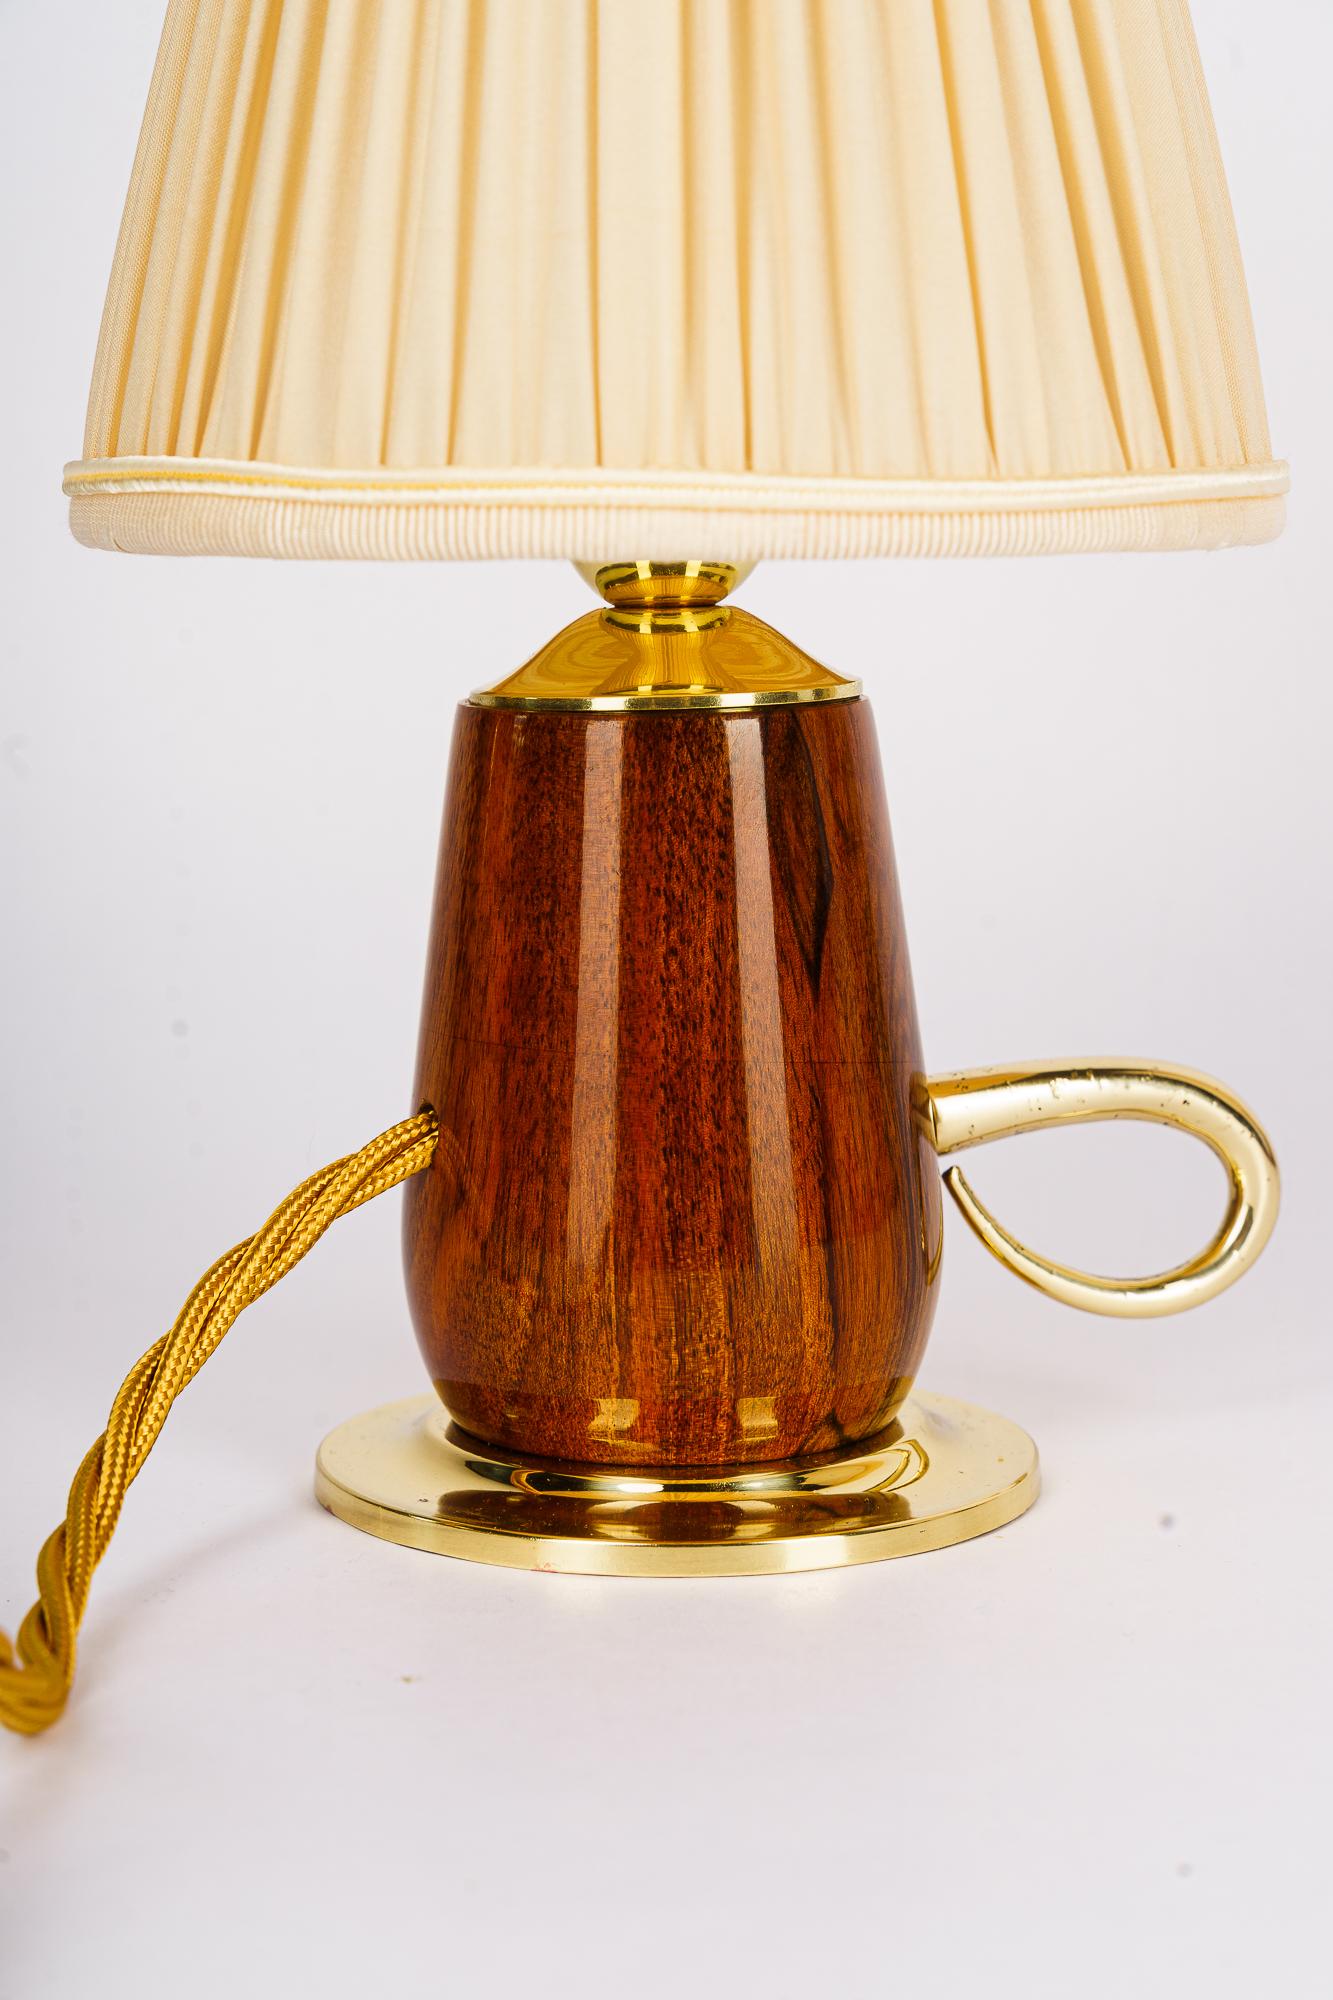 Rupert nikoll tischlampe kirschbaum mit stoffschirm wien um 1950er
Kirschenholz poliert
Messingteile poliert und einbrennlackiert
Der Stoffschirm wird ersetzt ( neu )